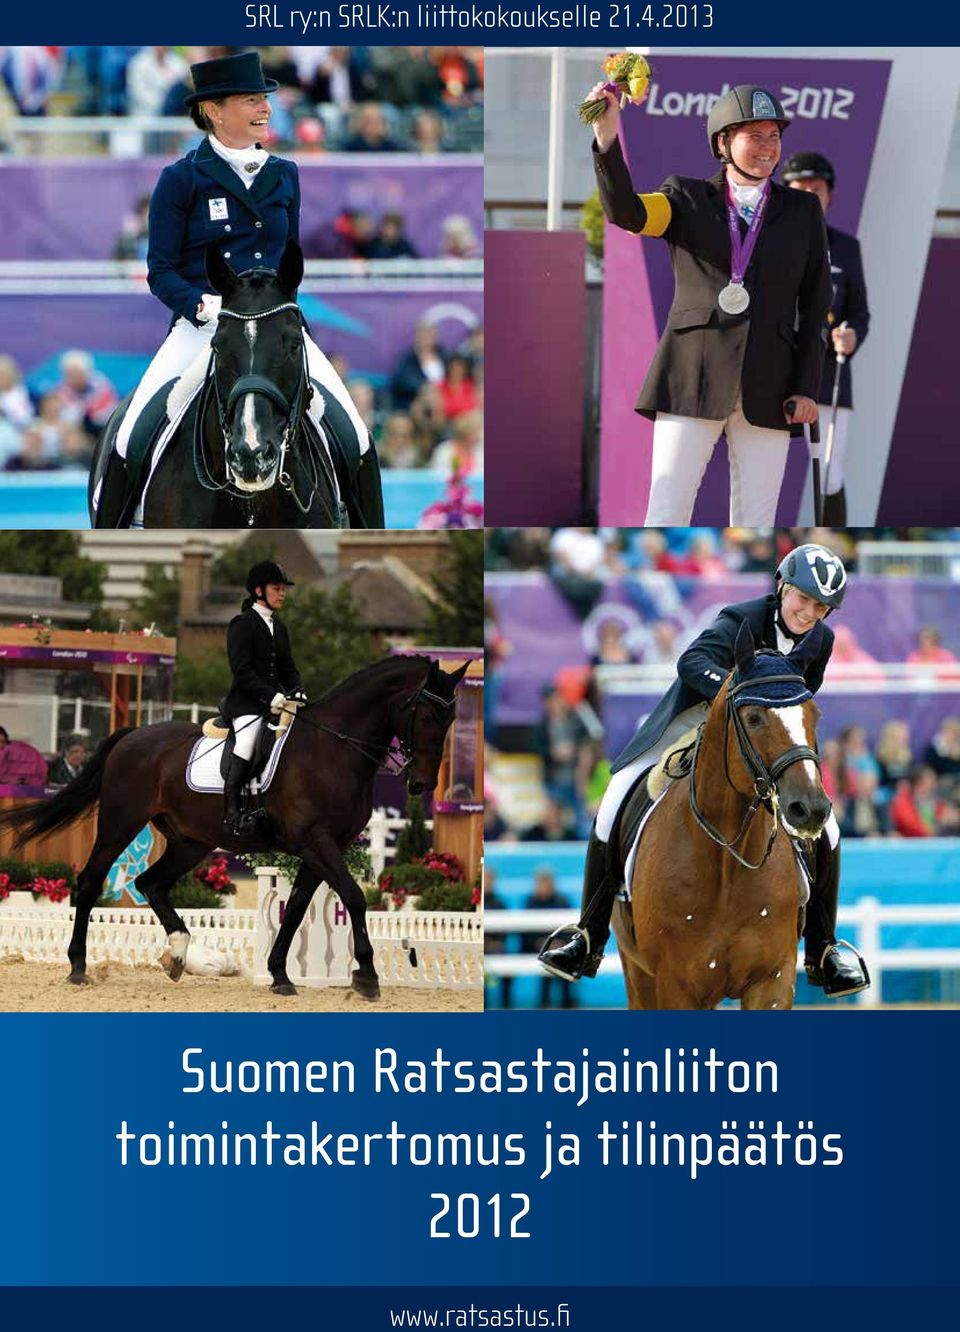 2013 Suomen Ratsastajainliiton